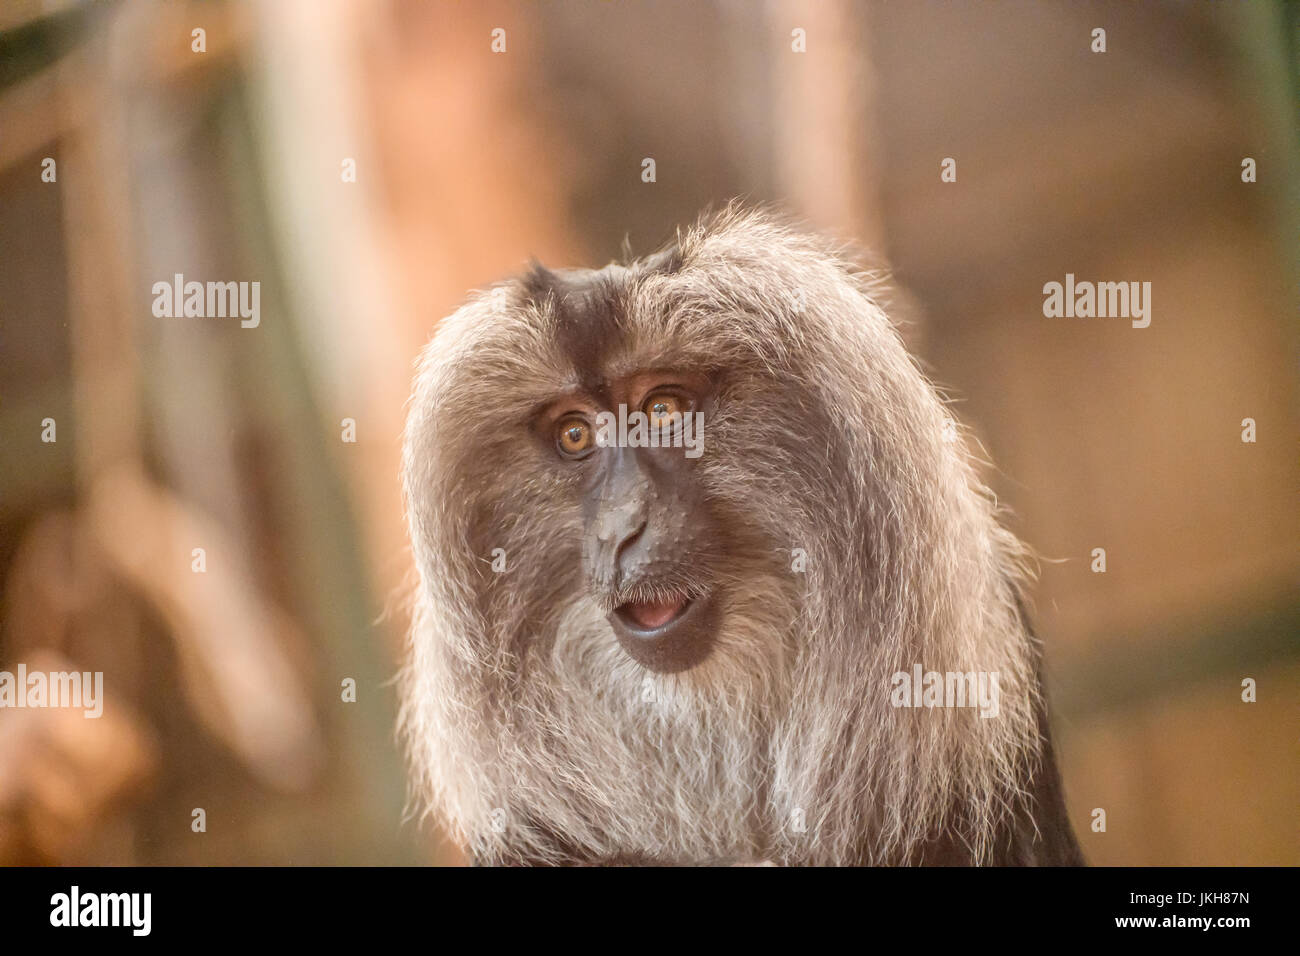 Scimmia urlatrice con lunghi capelli grigi e la bocca parzialmente aperta, Foto Stock